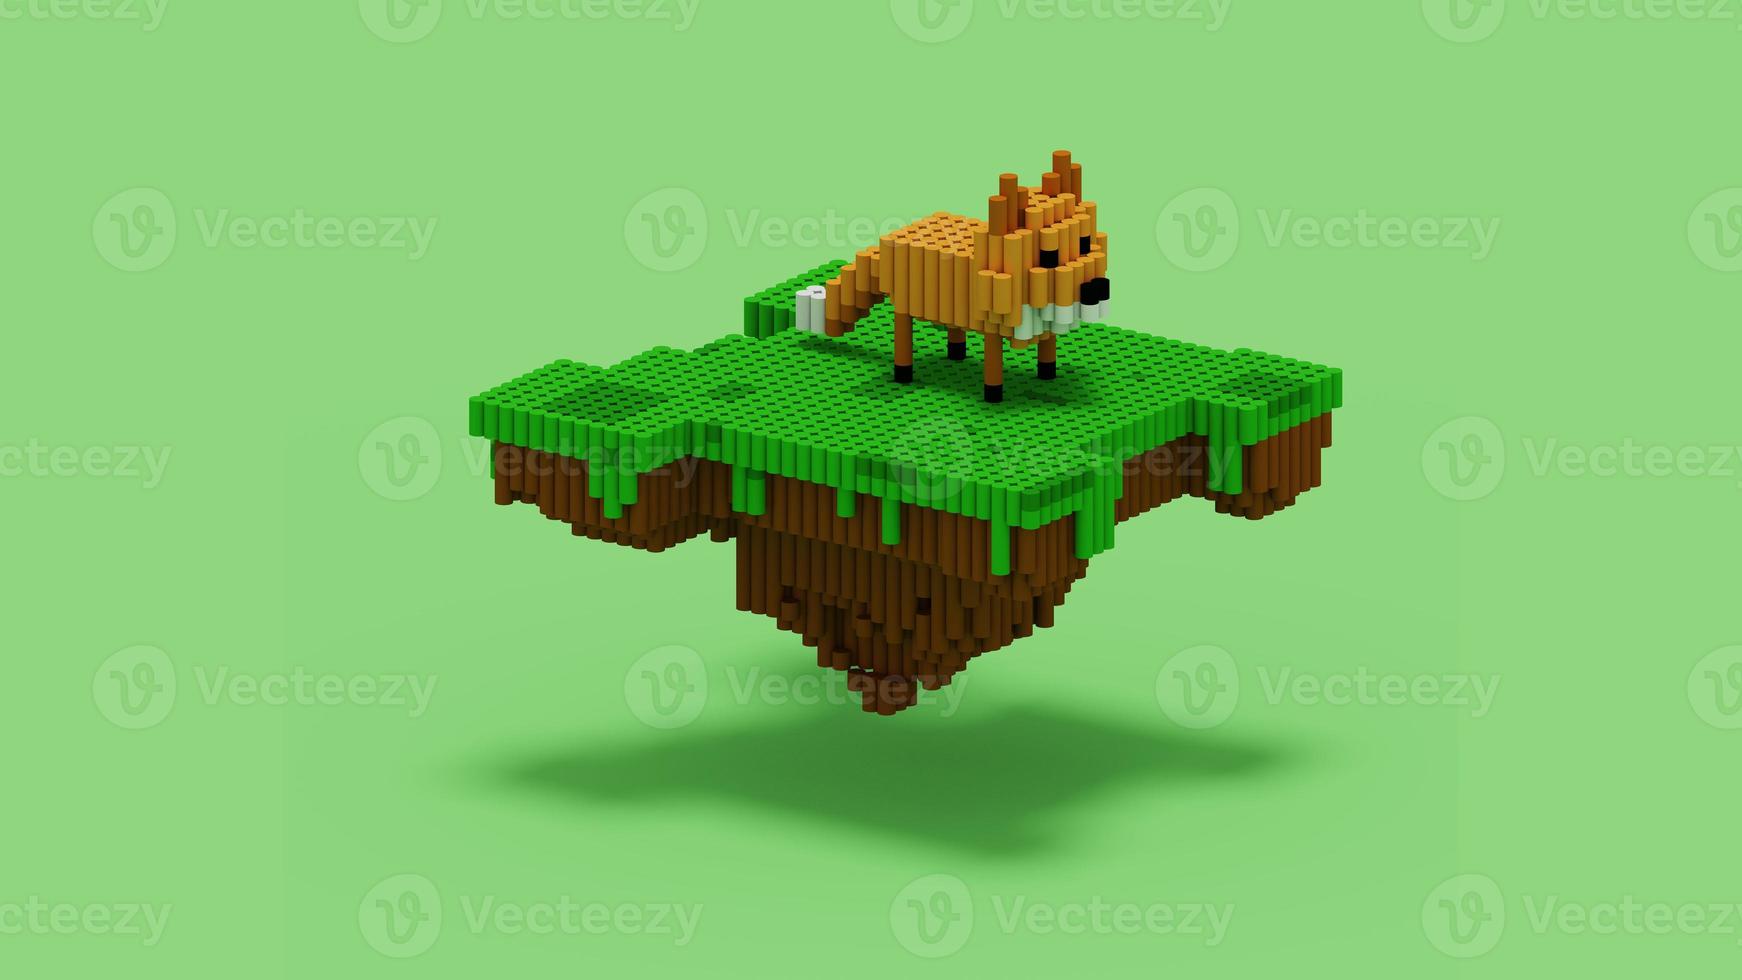 Representación 3d de la isla de zorro flotante con estilo de vóxel de cilindro y también con esquema de color naranja, marrón, blanco, negro y verde. perfecto para referencias de personajes de juegos foto